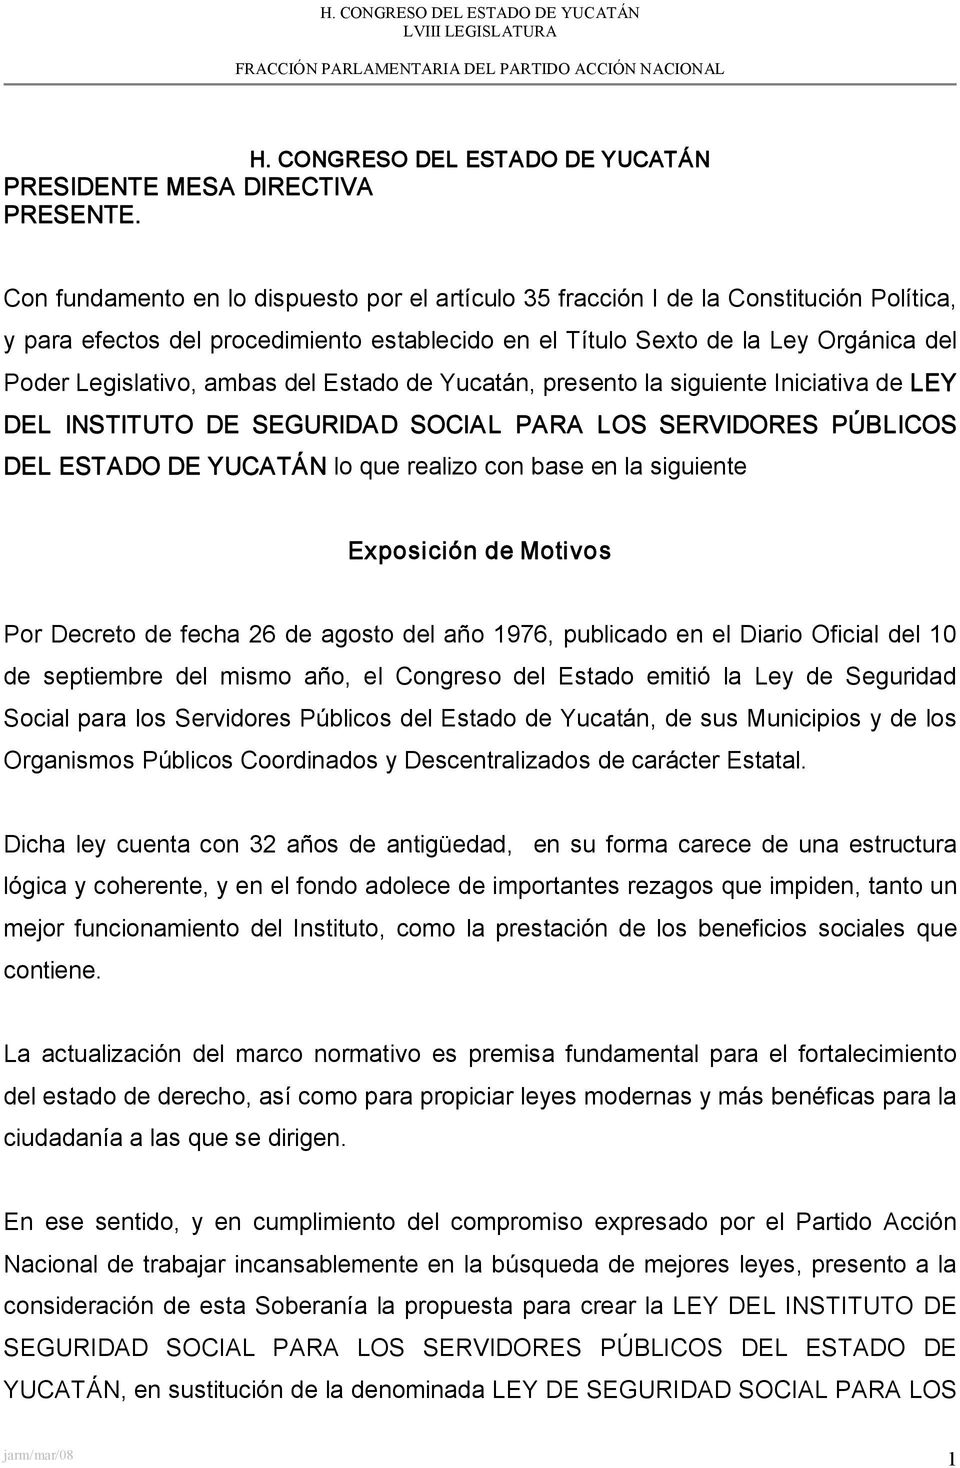 ambas del Estado de Yucatán, presento la siguiente Iniciativa de LEY DEL INSTITUTO DE SEGURIDAD SOCIAL PARA LOS SERVIDORES PÚBLICOS DEL ESTADO DE YUCATÁN lo que realizo con base en la siguiente